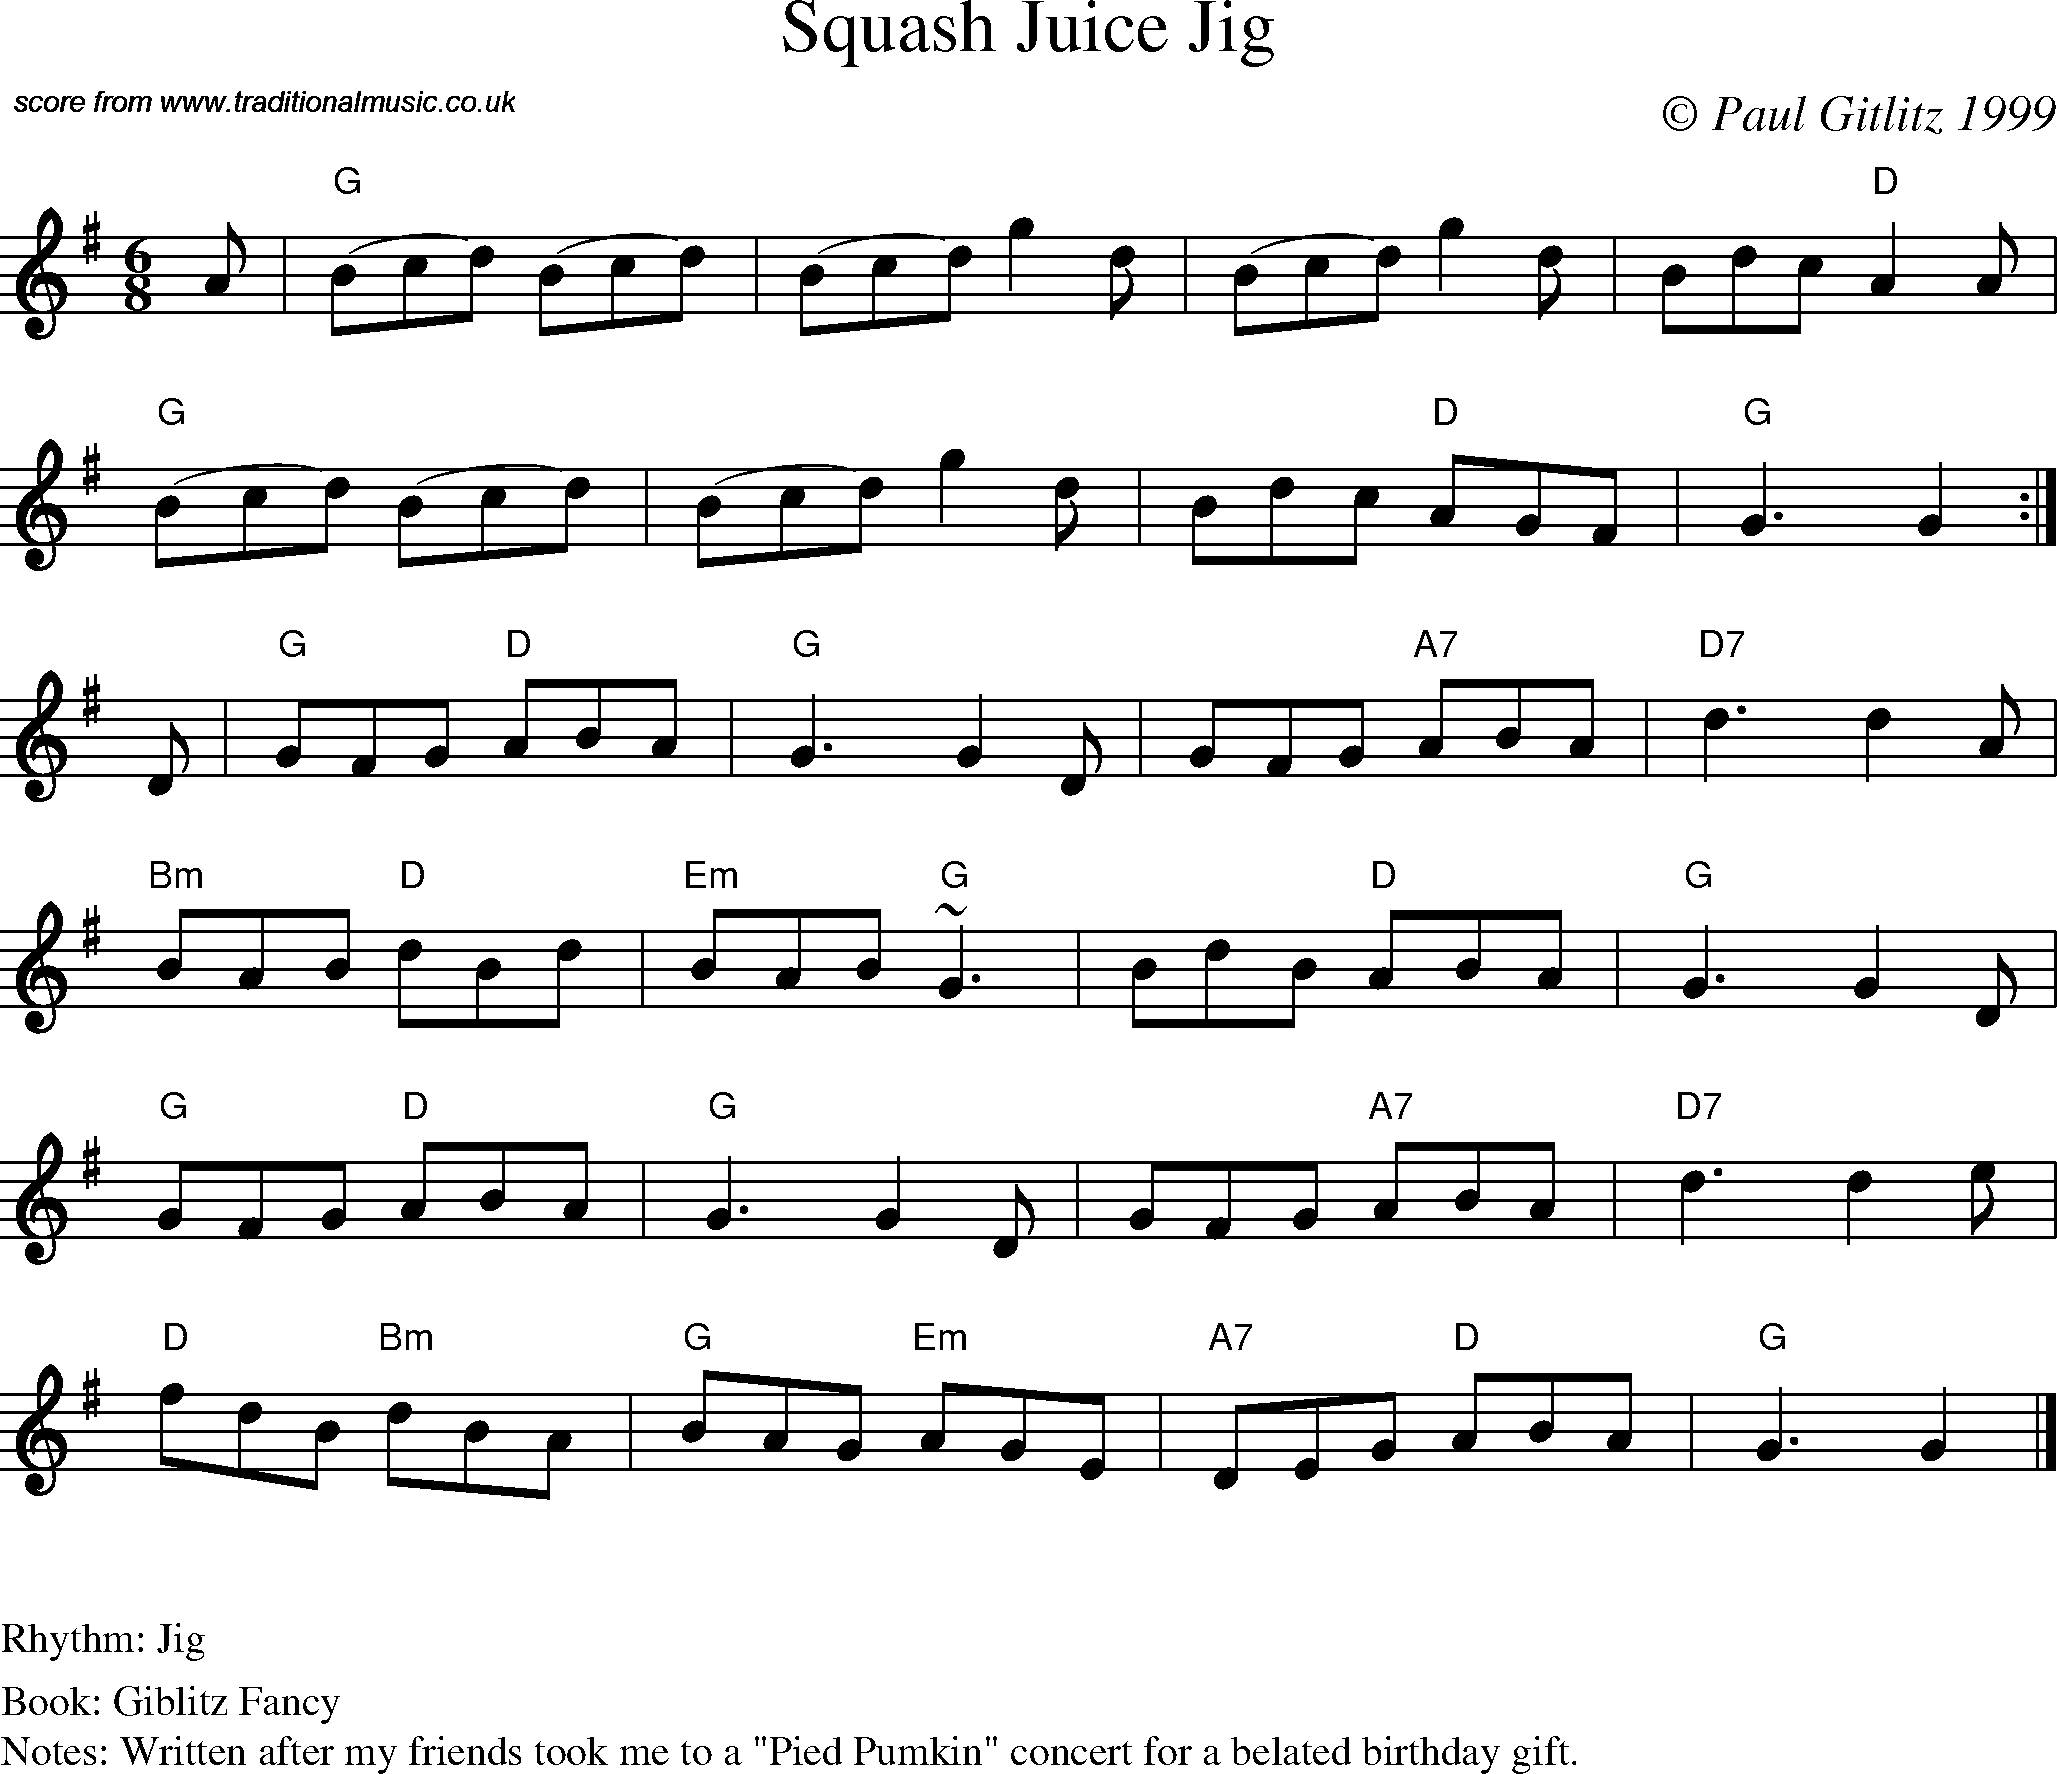 Sheet Music Score for Jig - Squash Juice Jig